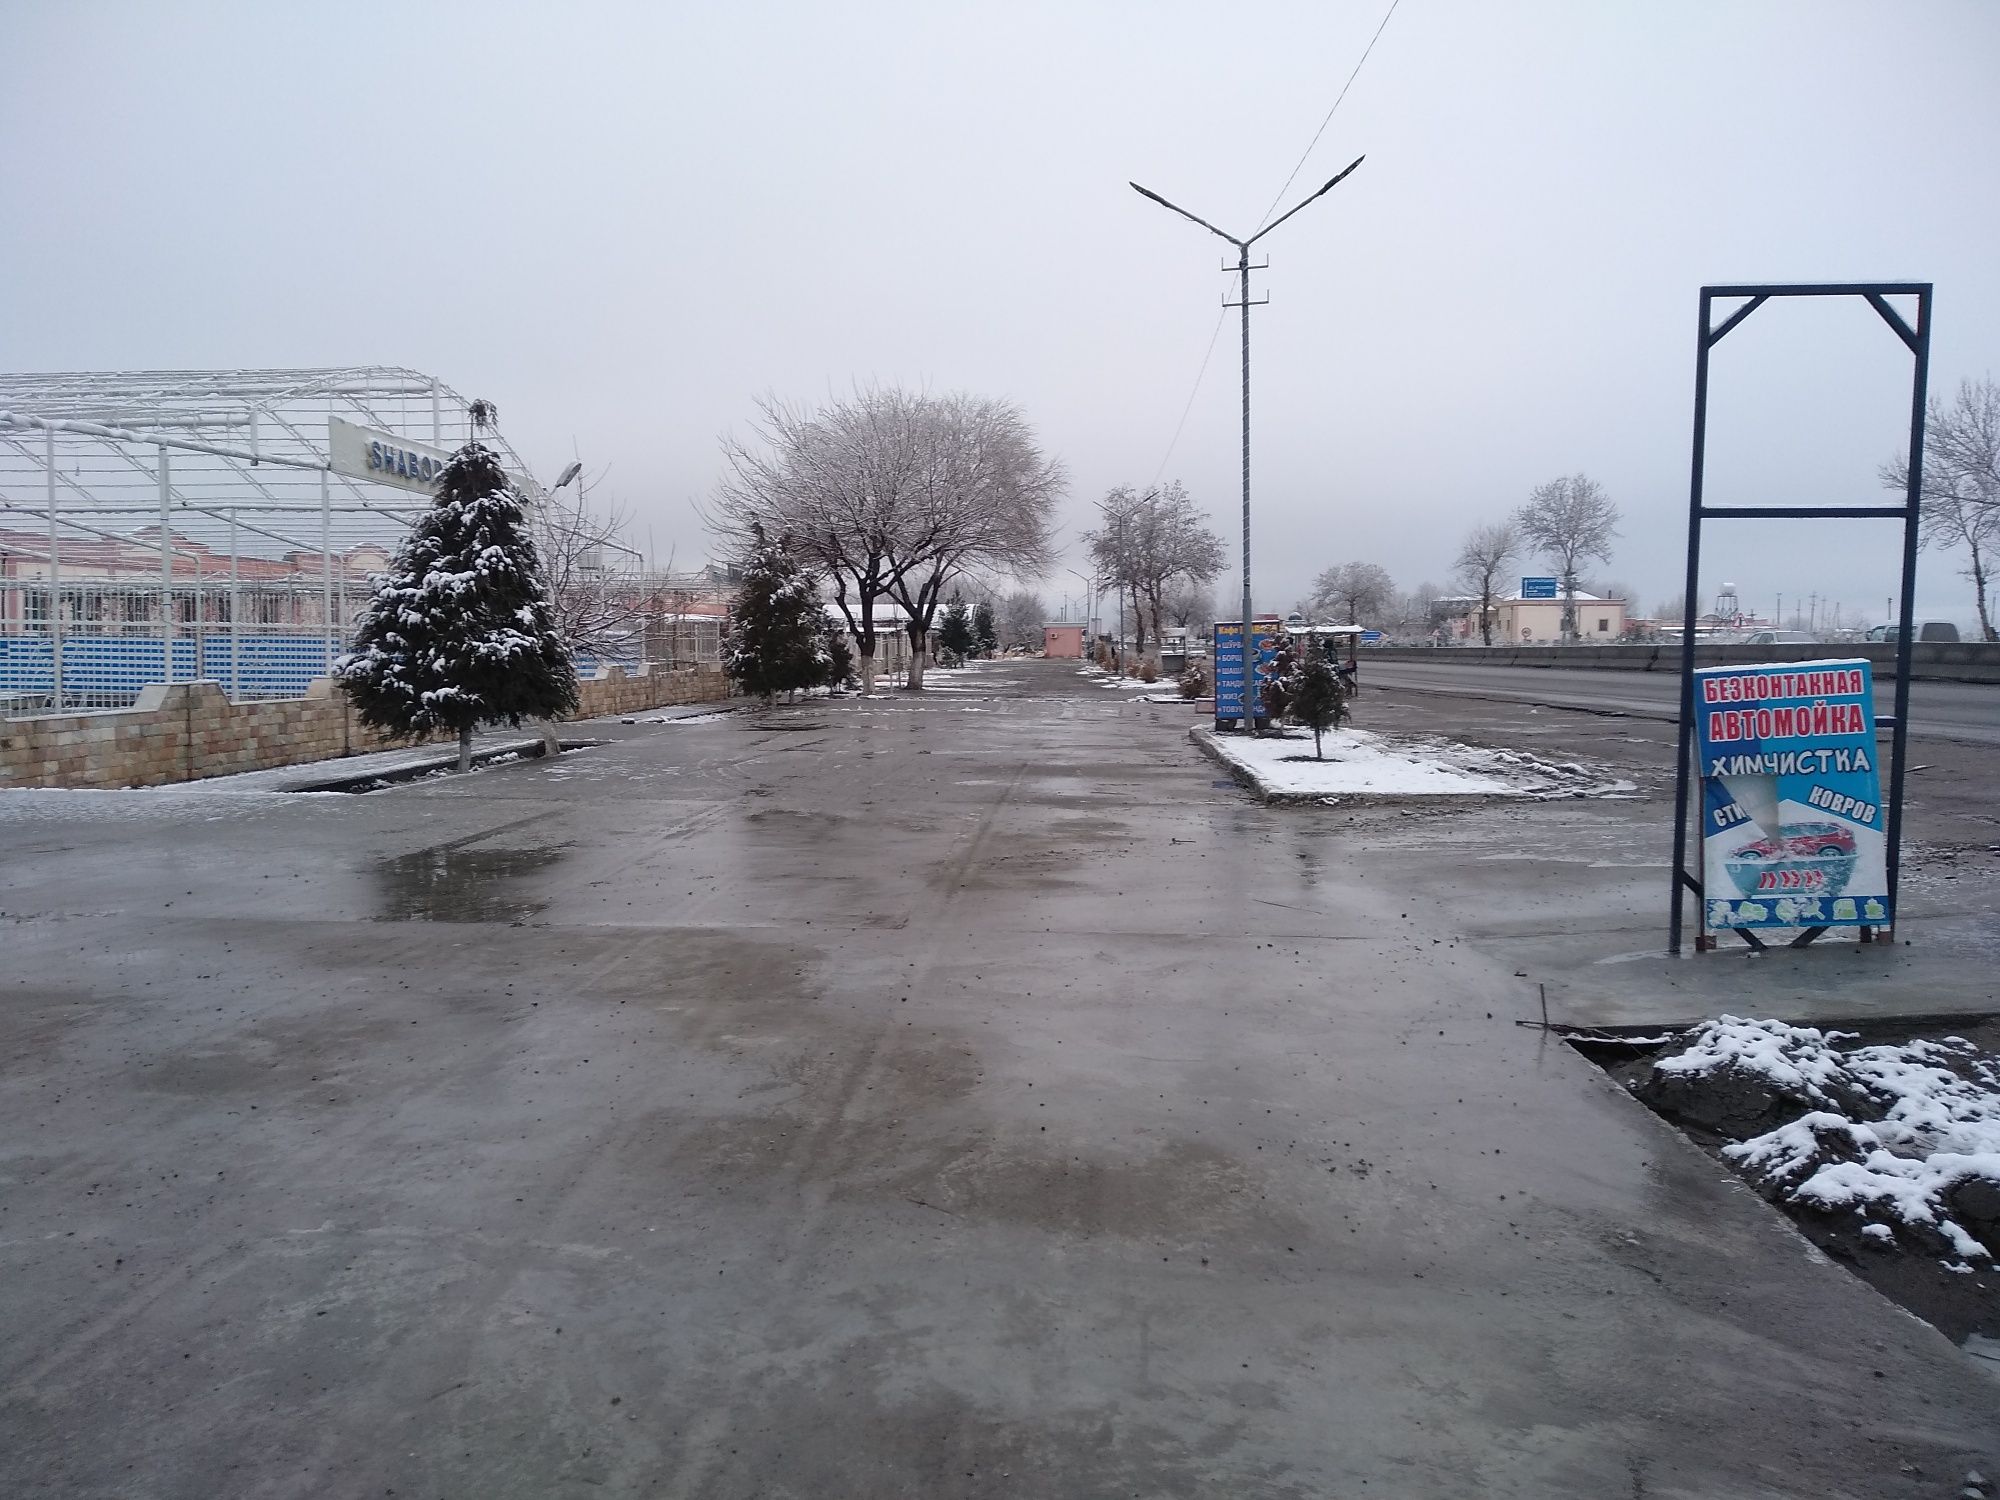 Jomboyda Samarqand- Toshkent trassada joylashgan bino sotiladi